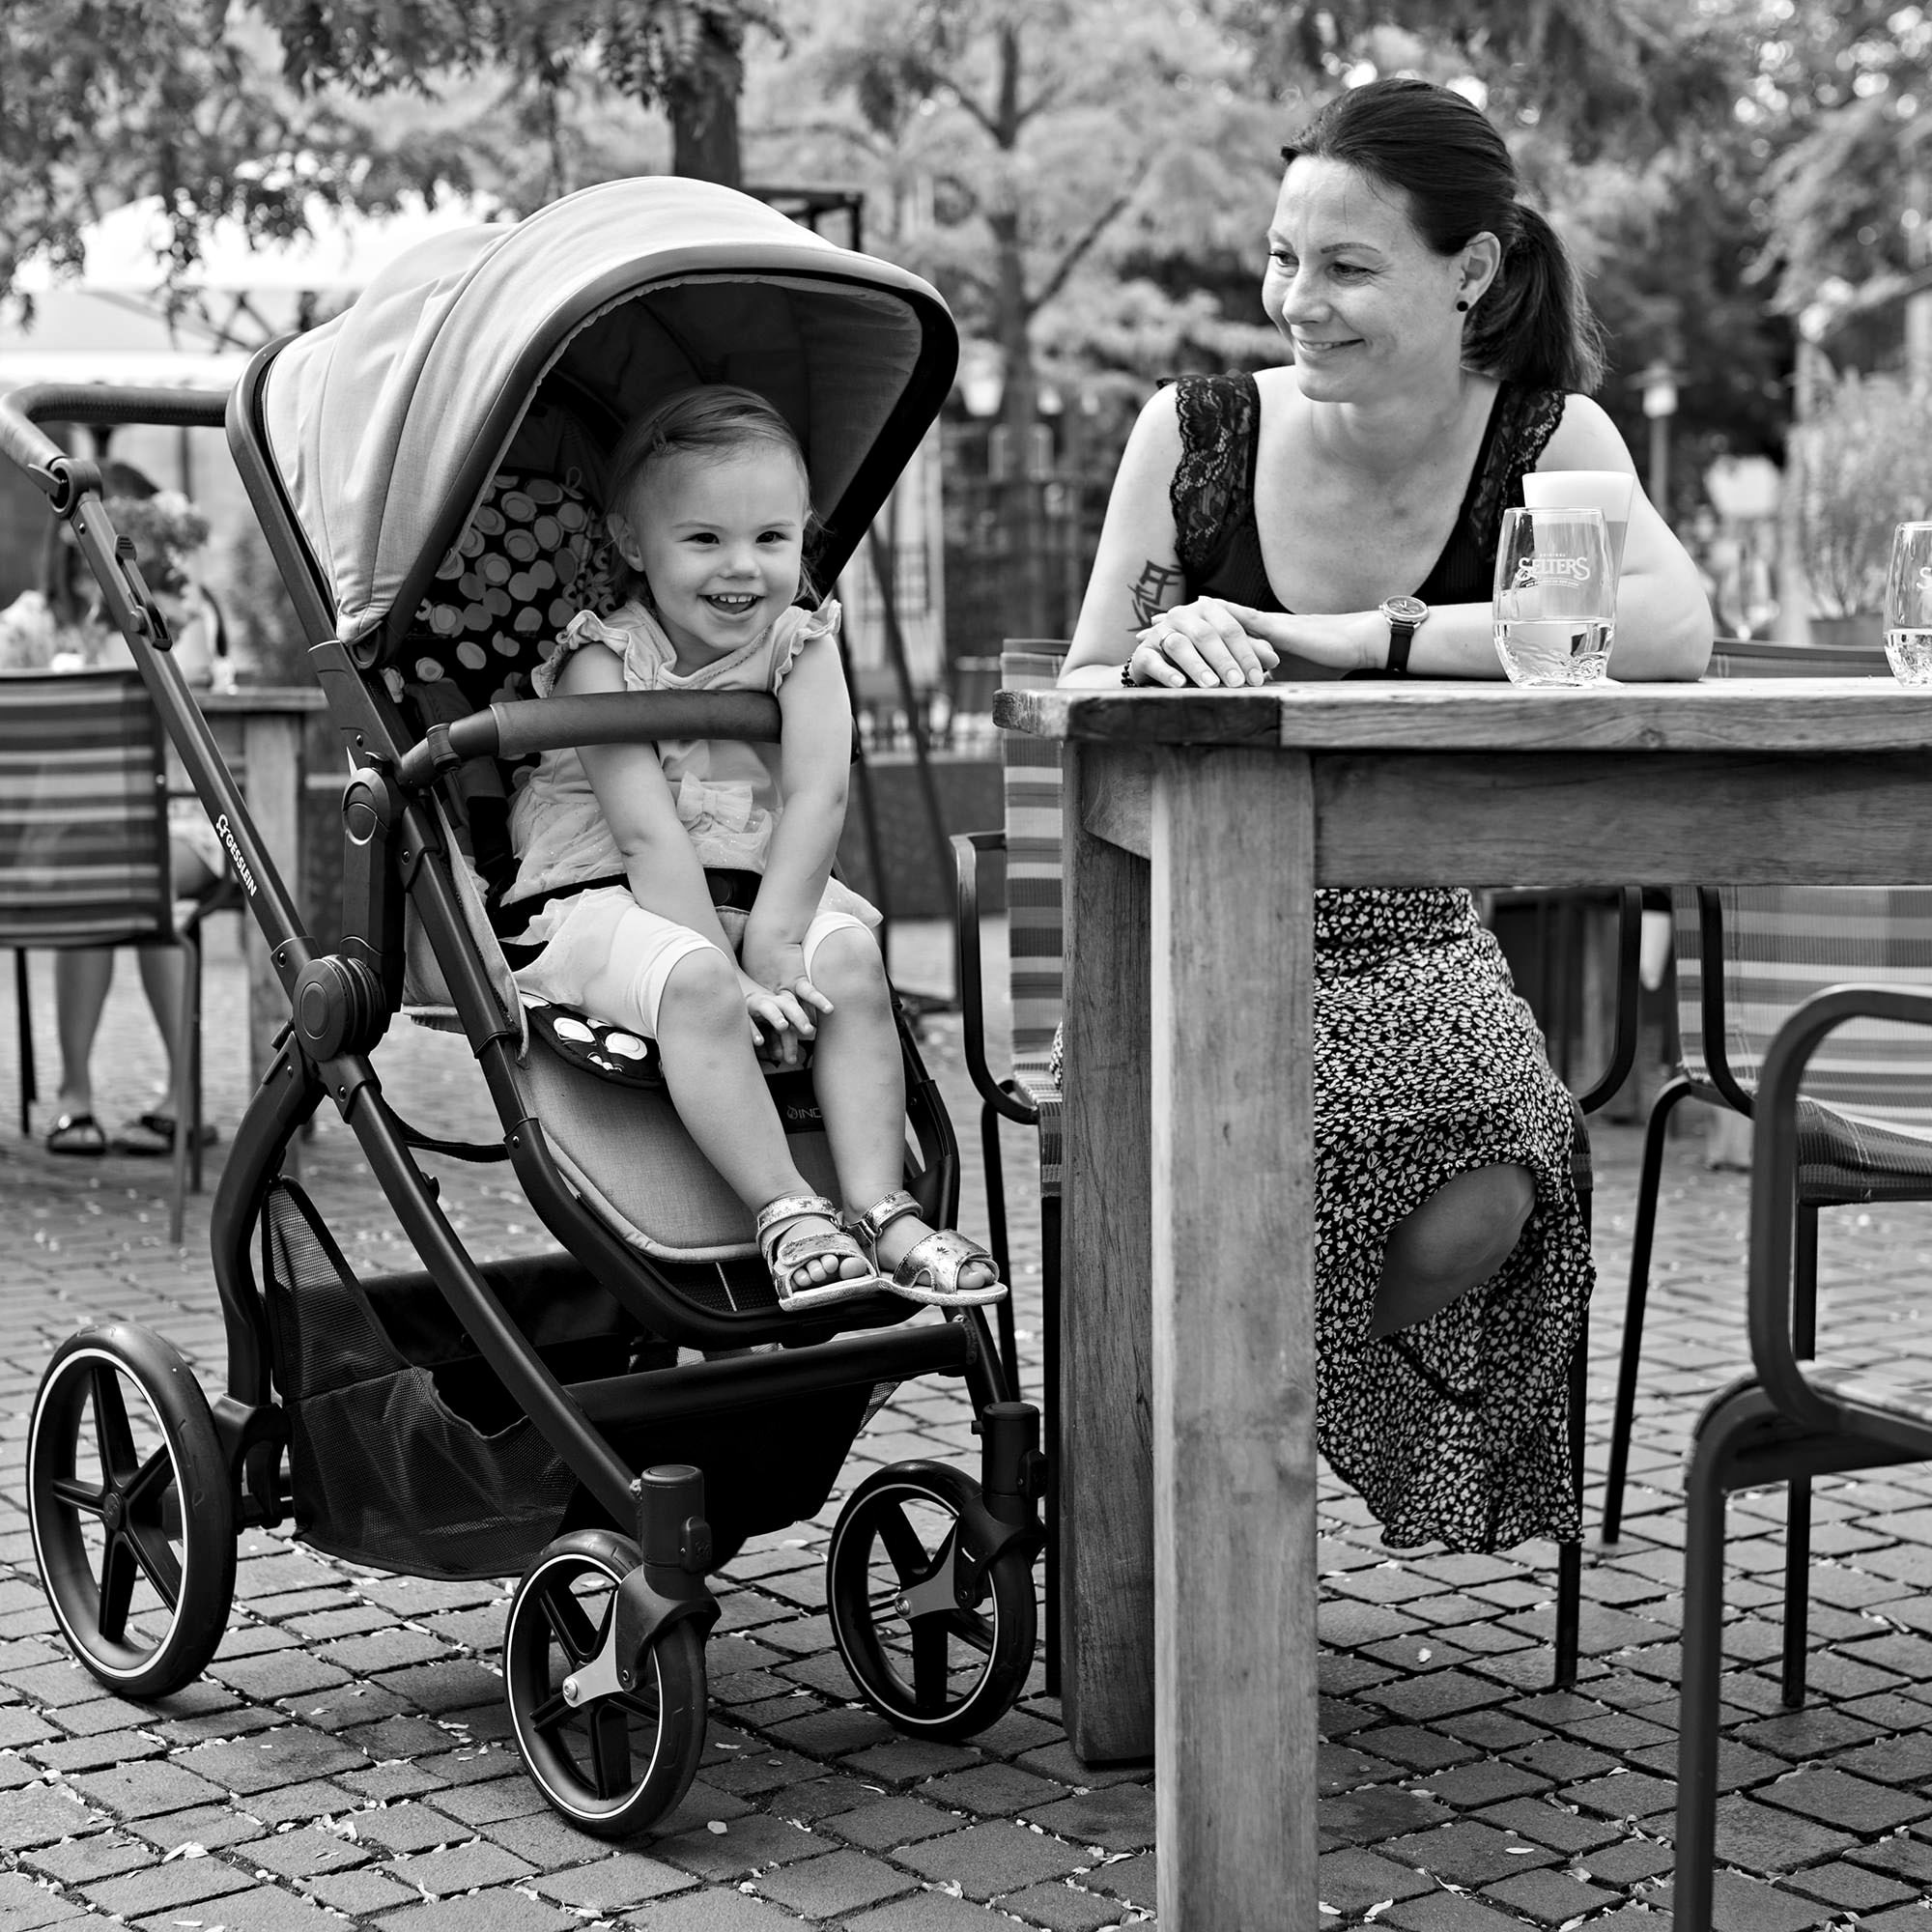 Gesslein Kombi-Kinderwagen »FX4 Soft+ mit Aufsatz Life, schwarz/cognac, schiefergrau«, mit Babywanne C3 und Babyschalenadapter